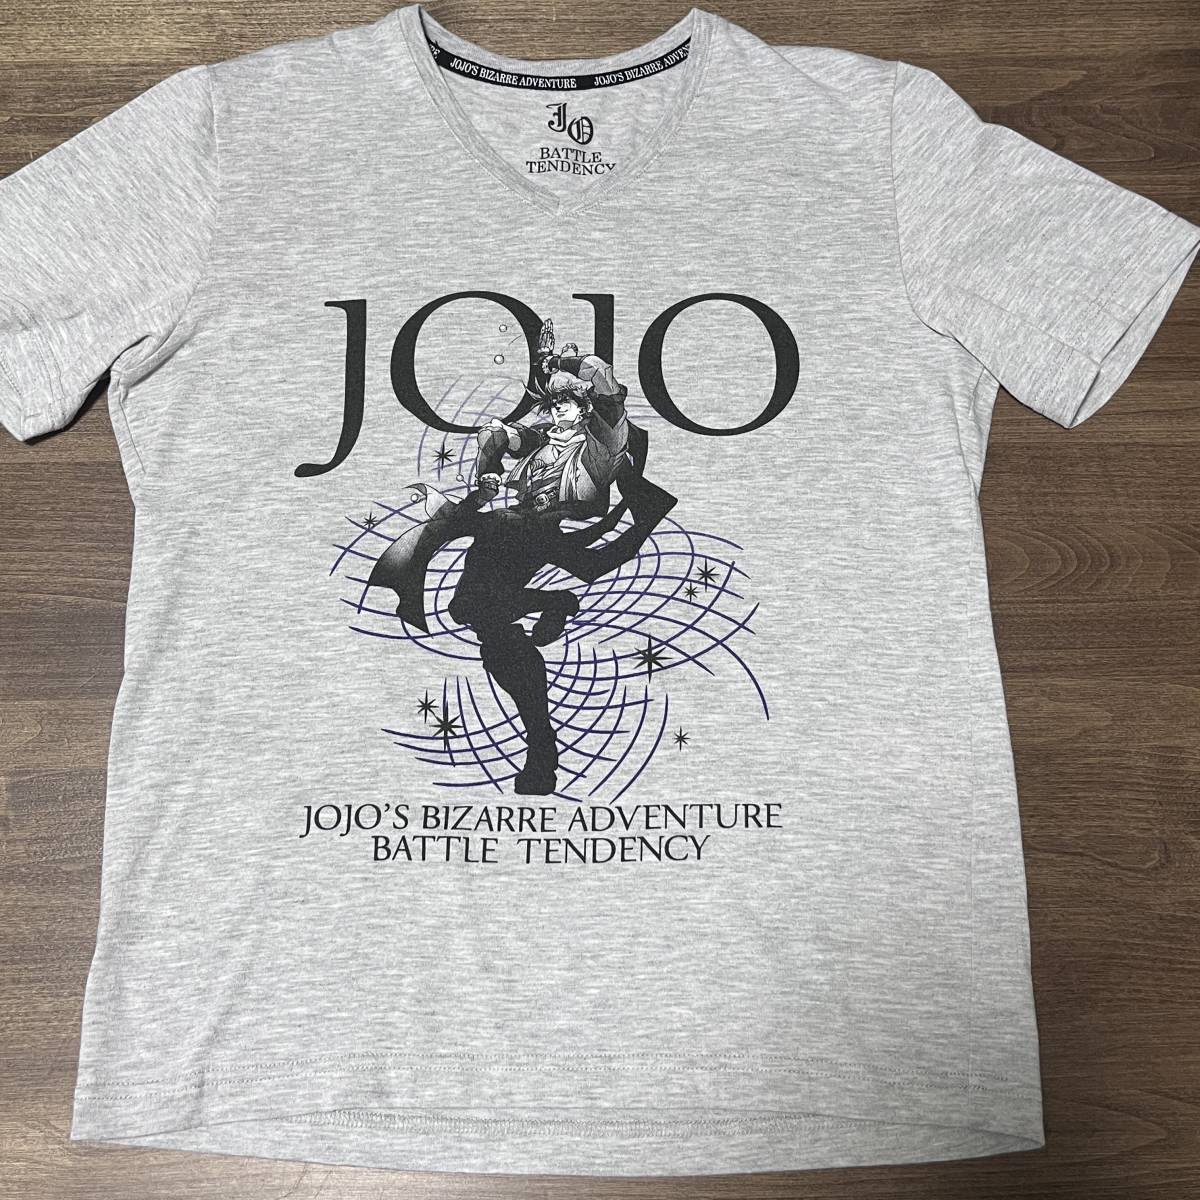 ジョジョの奇妙な冒険 第2部 戦闘潮流 Tシャツ ( JoJo's Bizarre Adventure season 2 T-shirt)_画像2